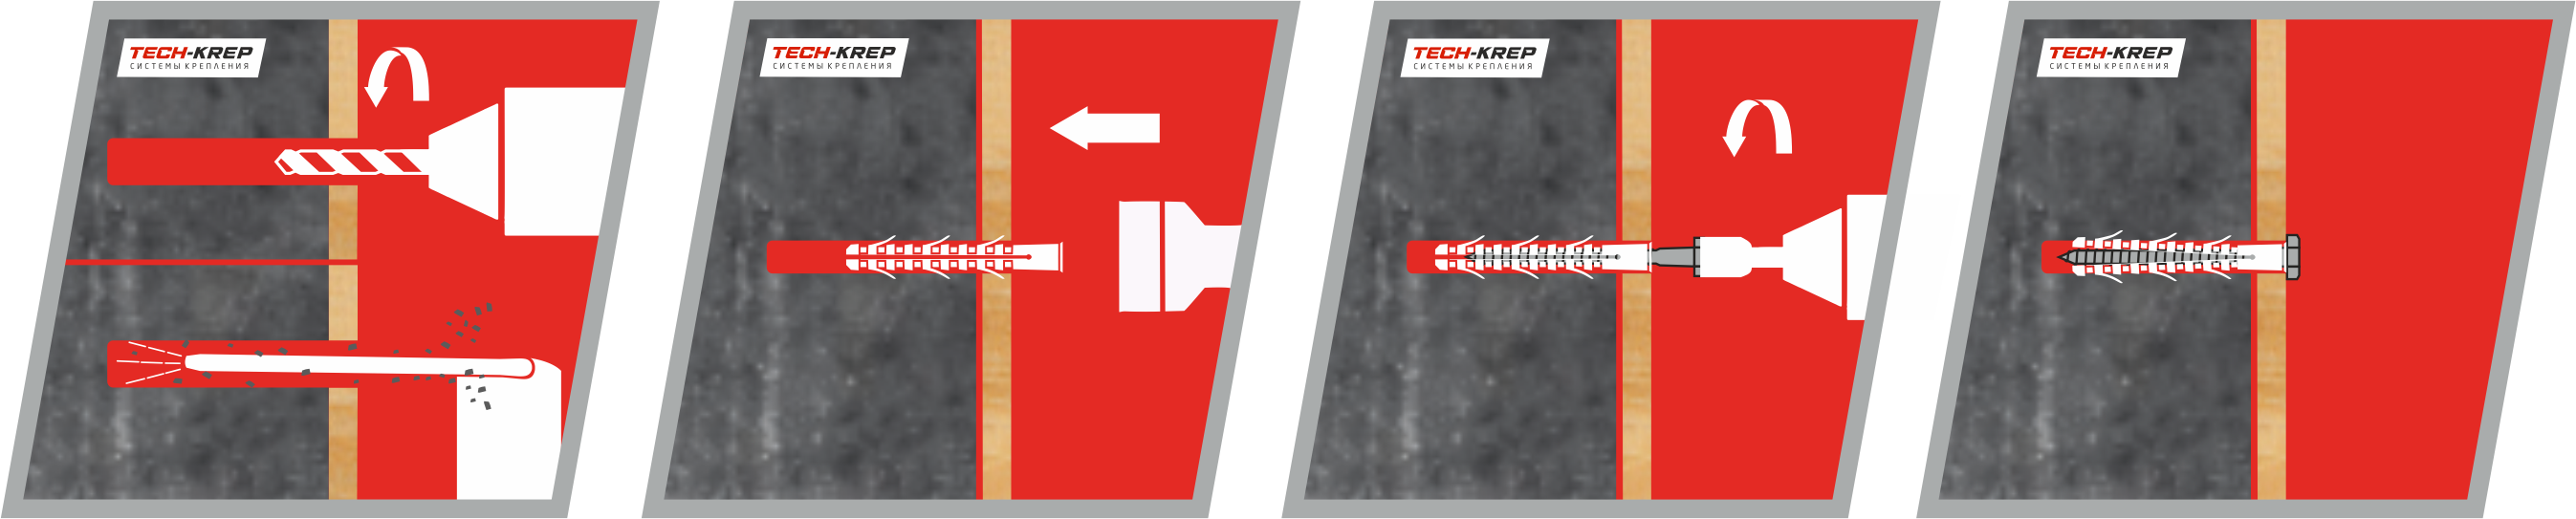 Схема установки дюбеля фасадного TSX-500F Tech-KREP PRO